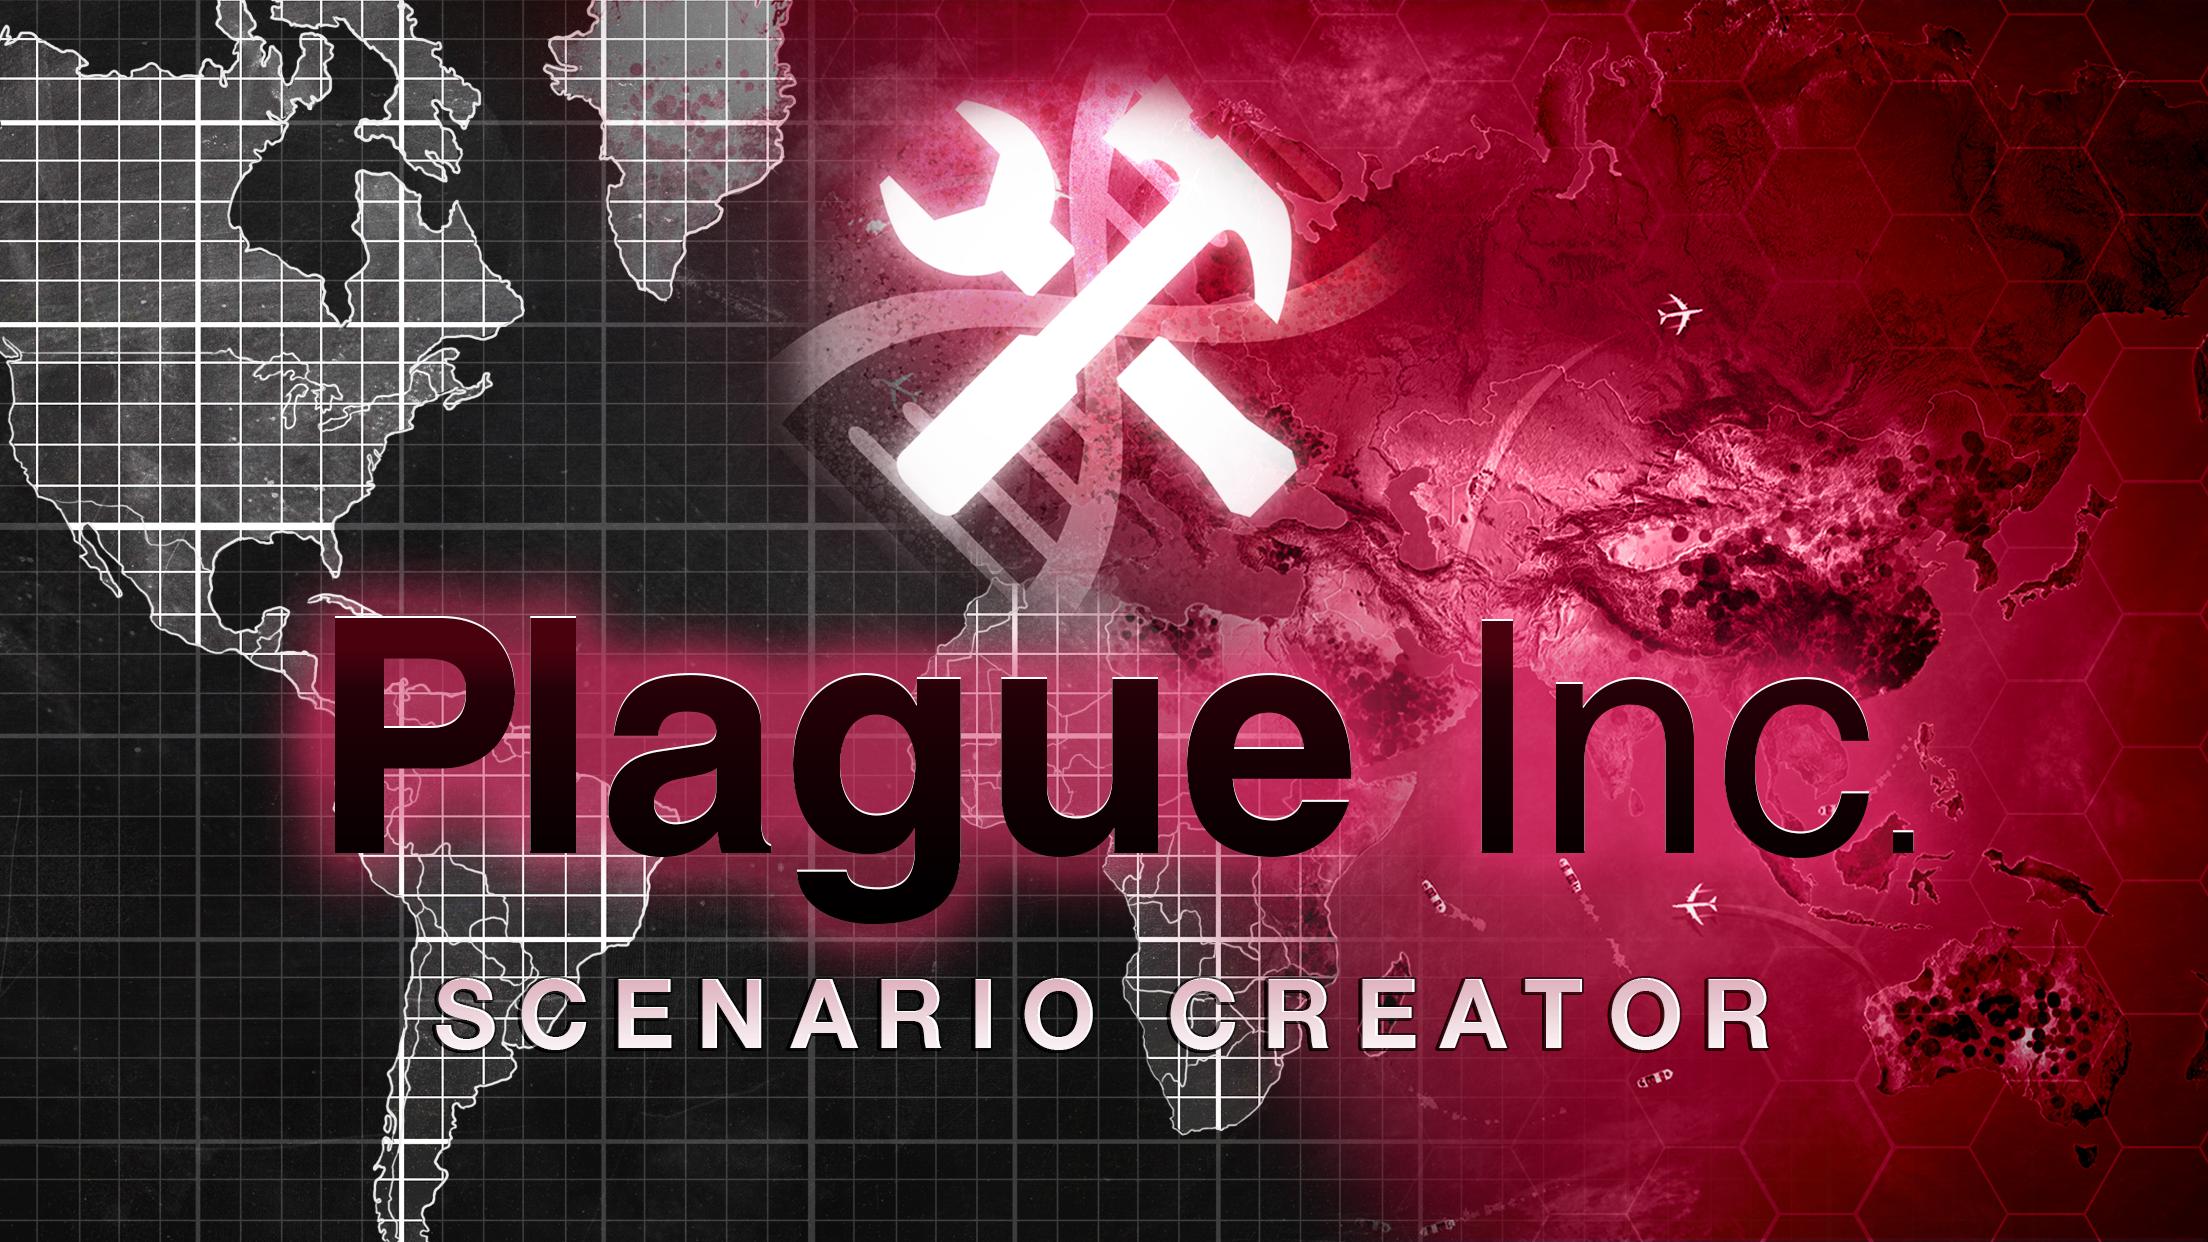 Вирус игра plague inc. Plague Inc. Plague Inc: scenario creator. Plague Inc сценарии. Plague Inc редактор.